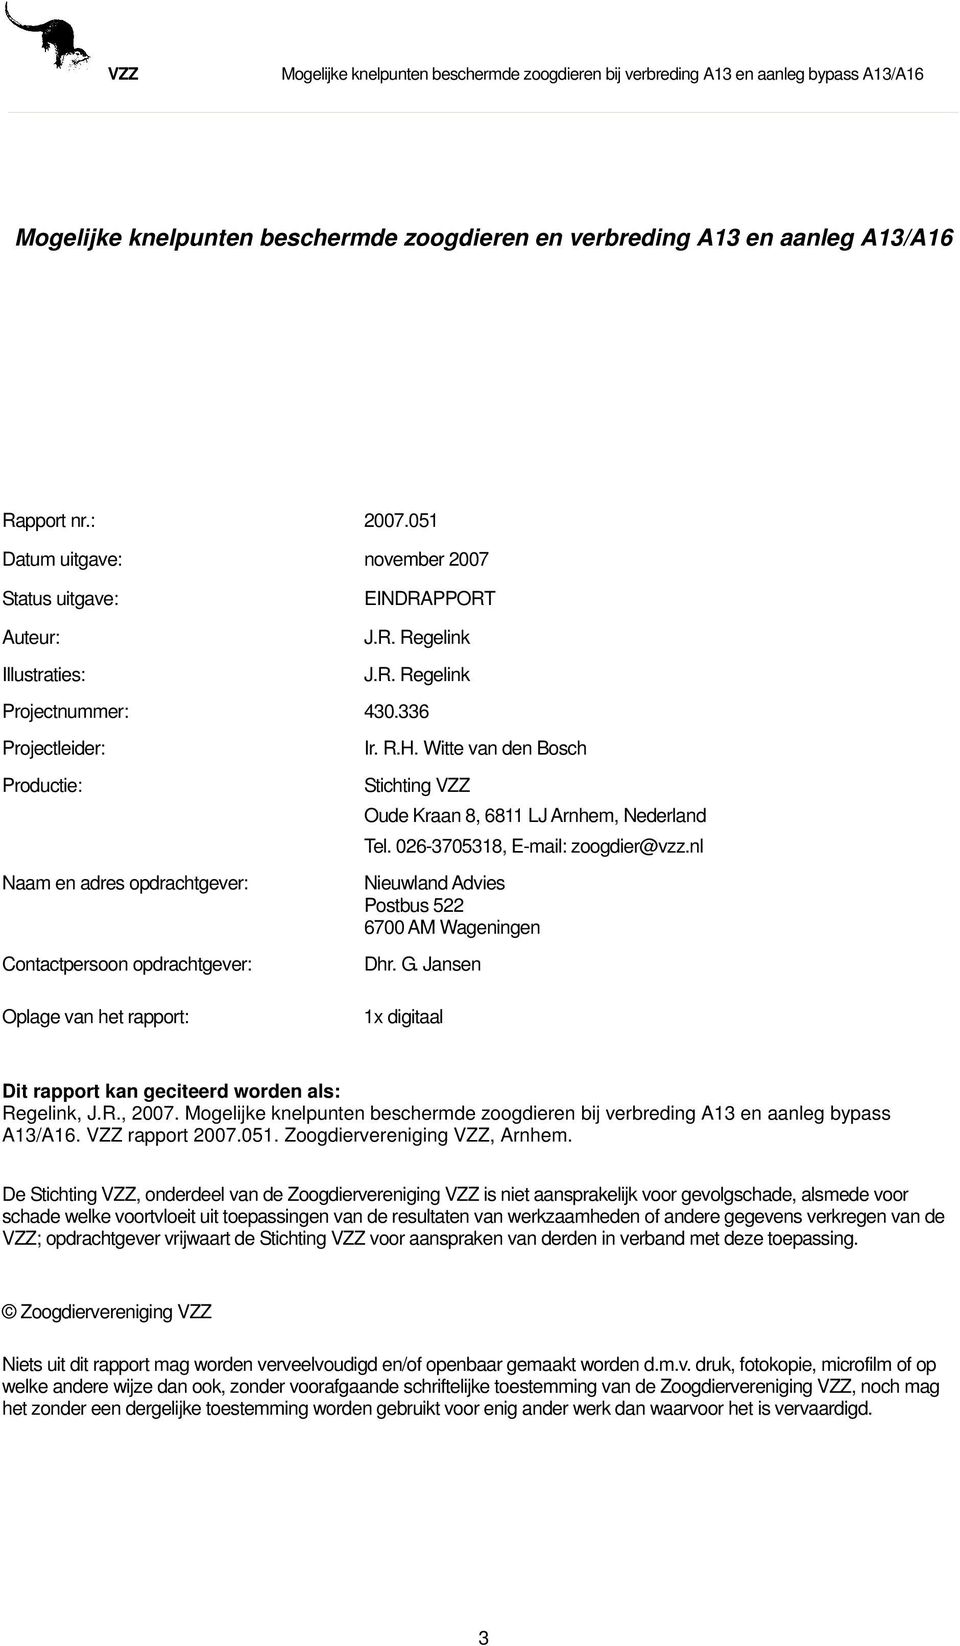 026-3705318, E-mail: zoogdier@vzz.nl Nieuwland Advies Postbus 522 6700 AM Wageningen Dhr. G. Jansen Oplage van het rapport: 1x digitaal Dit rapport kan geciteerd worden als: Regelink, J.R., 2007.